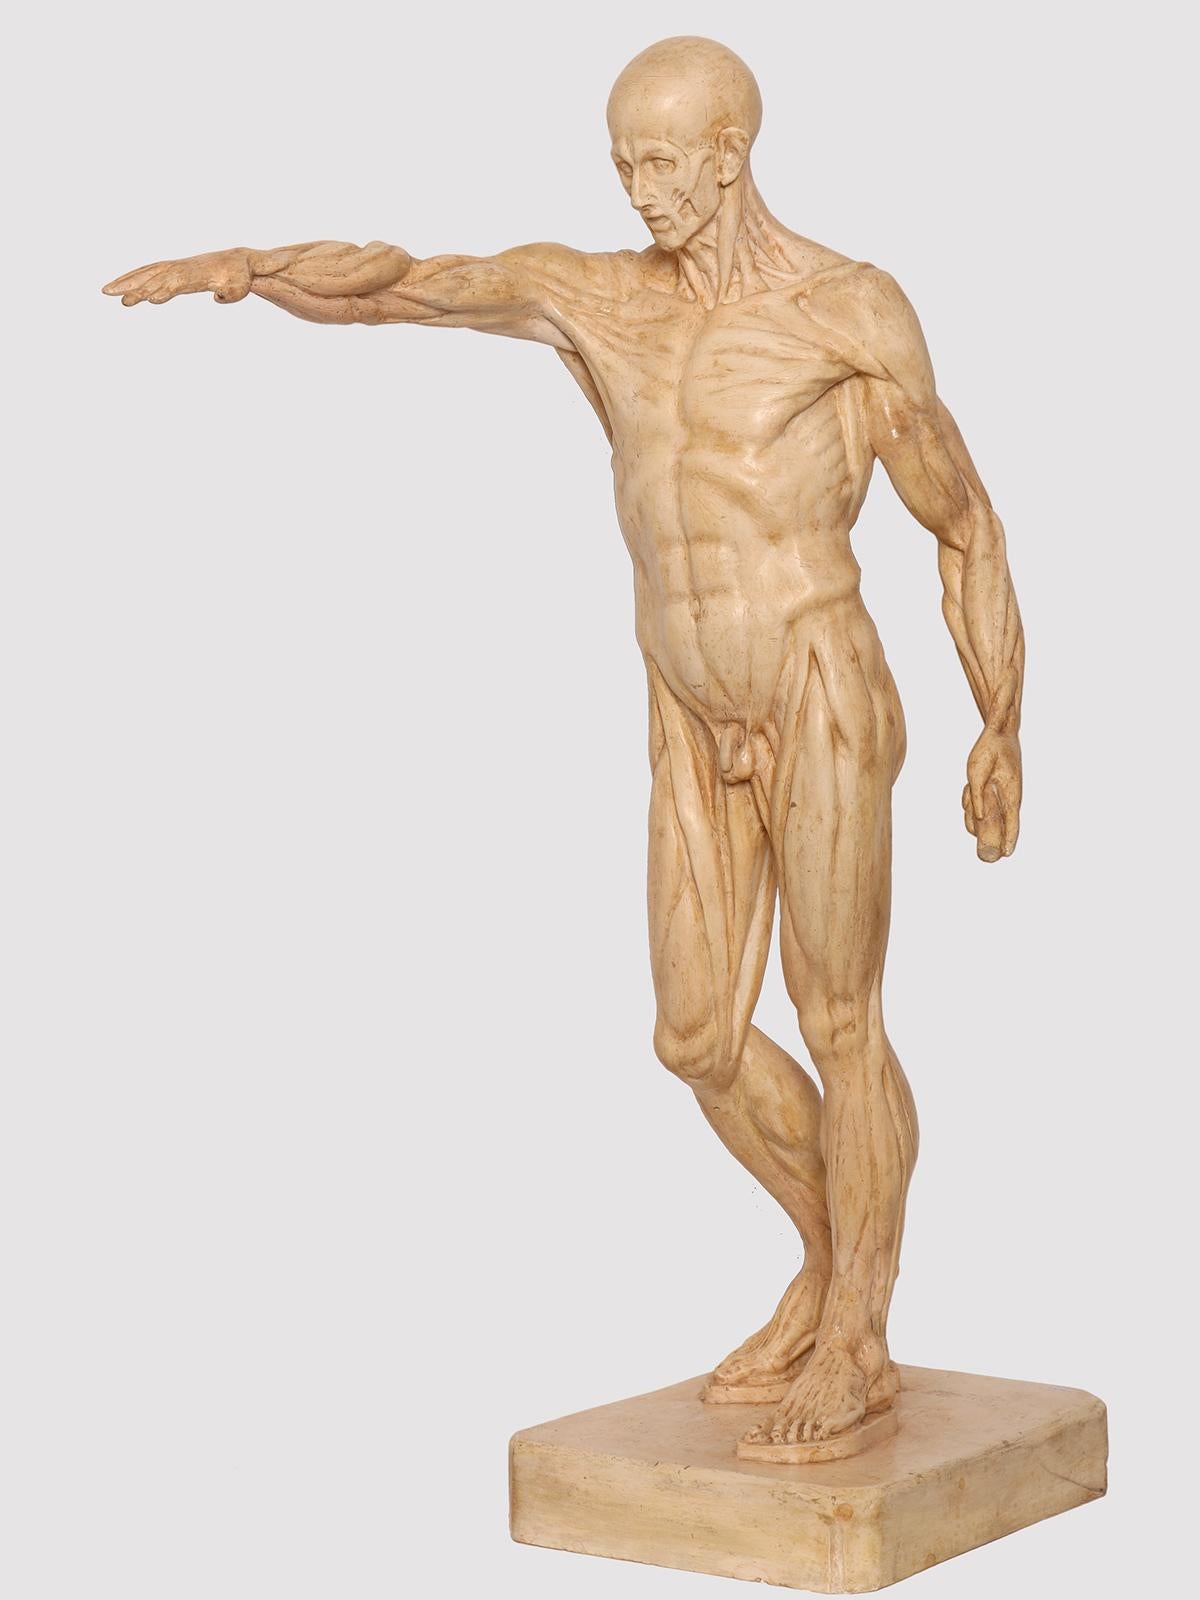 La sculpture anatomique, réalisée en plâtre, représente un écorché debout sur un socle rectangulaire, dans une pose classique, le bras levé. Objectif de l'étude anatomique. Italie, vers 1880.